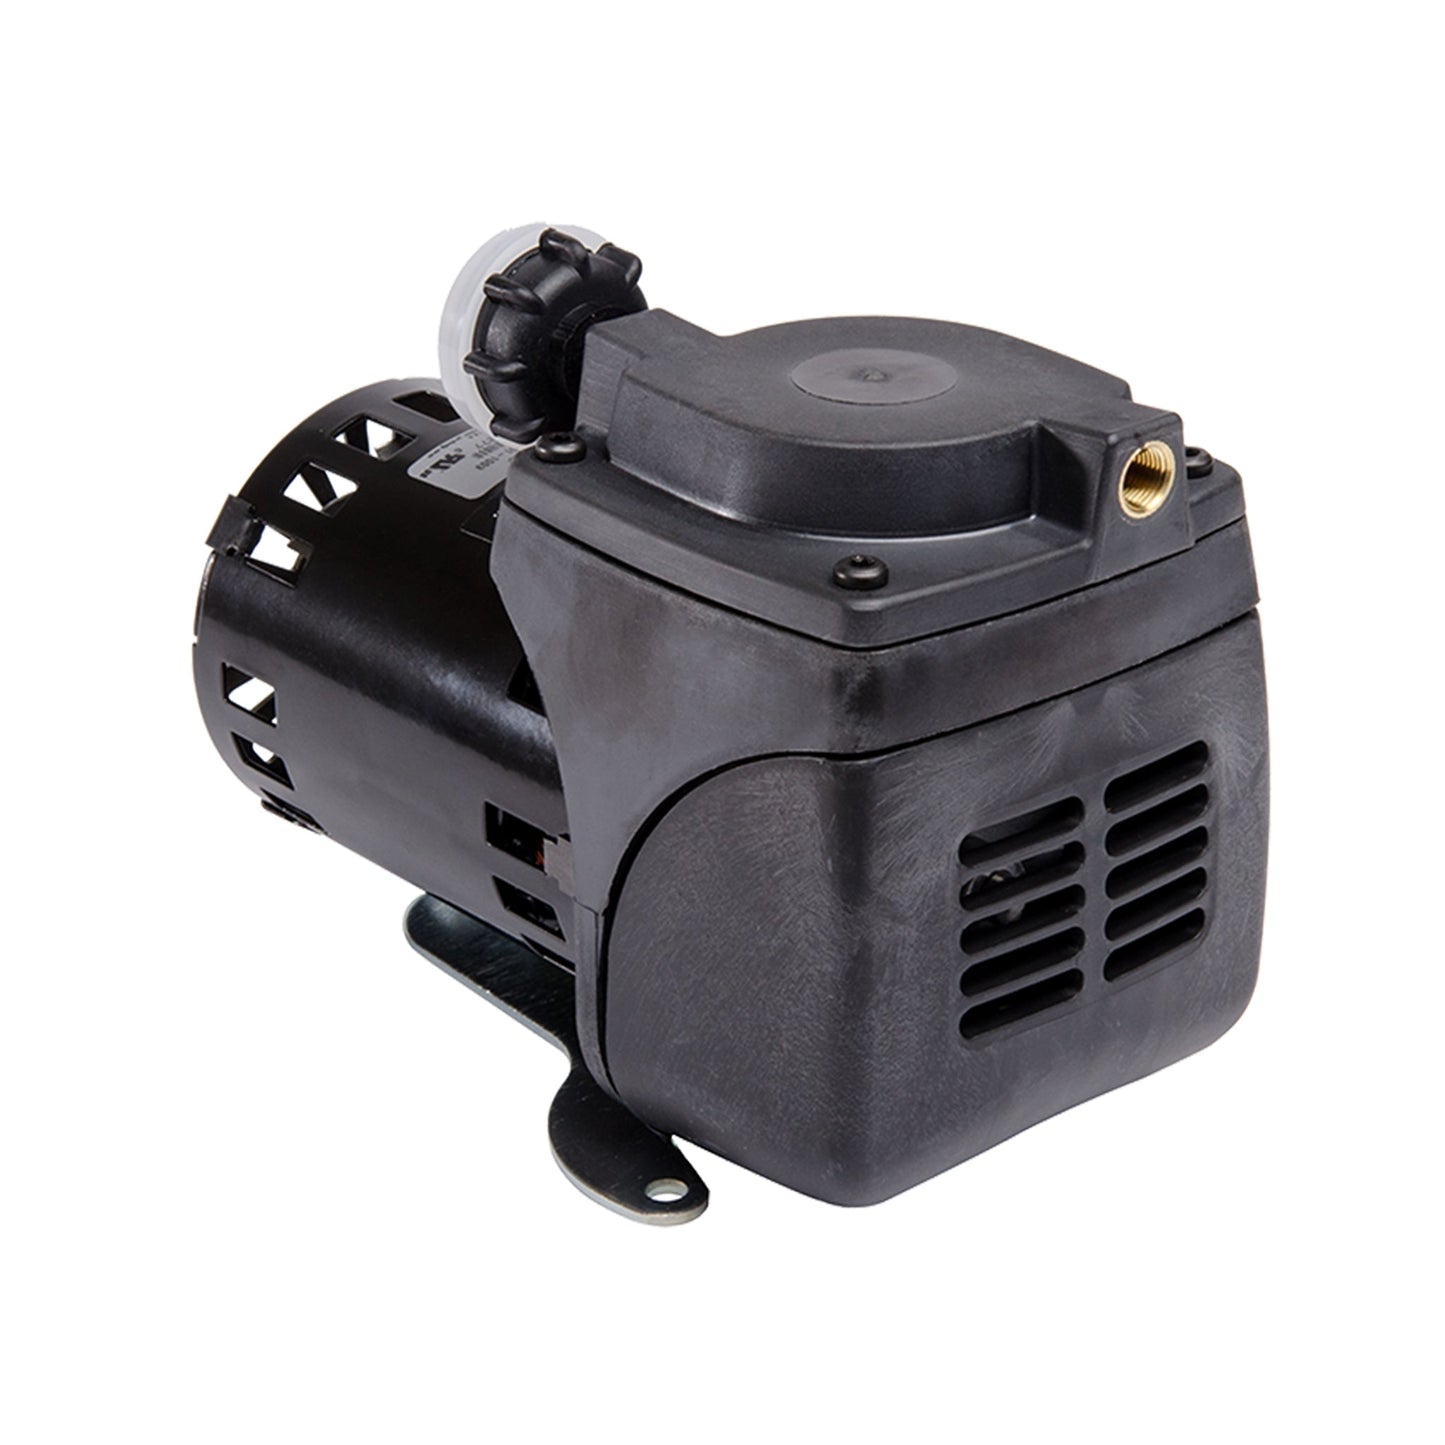 Gast 22D1180-201-1002 Diaphragm Air Compressor Vacuum Pump